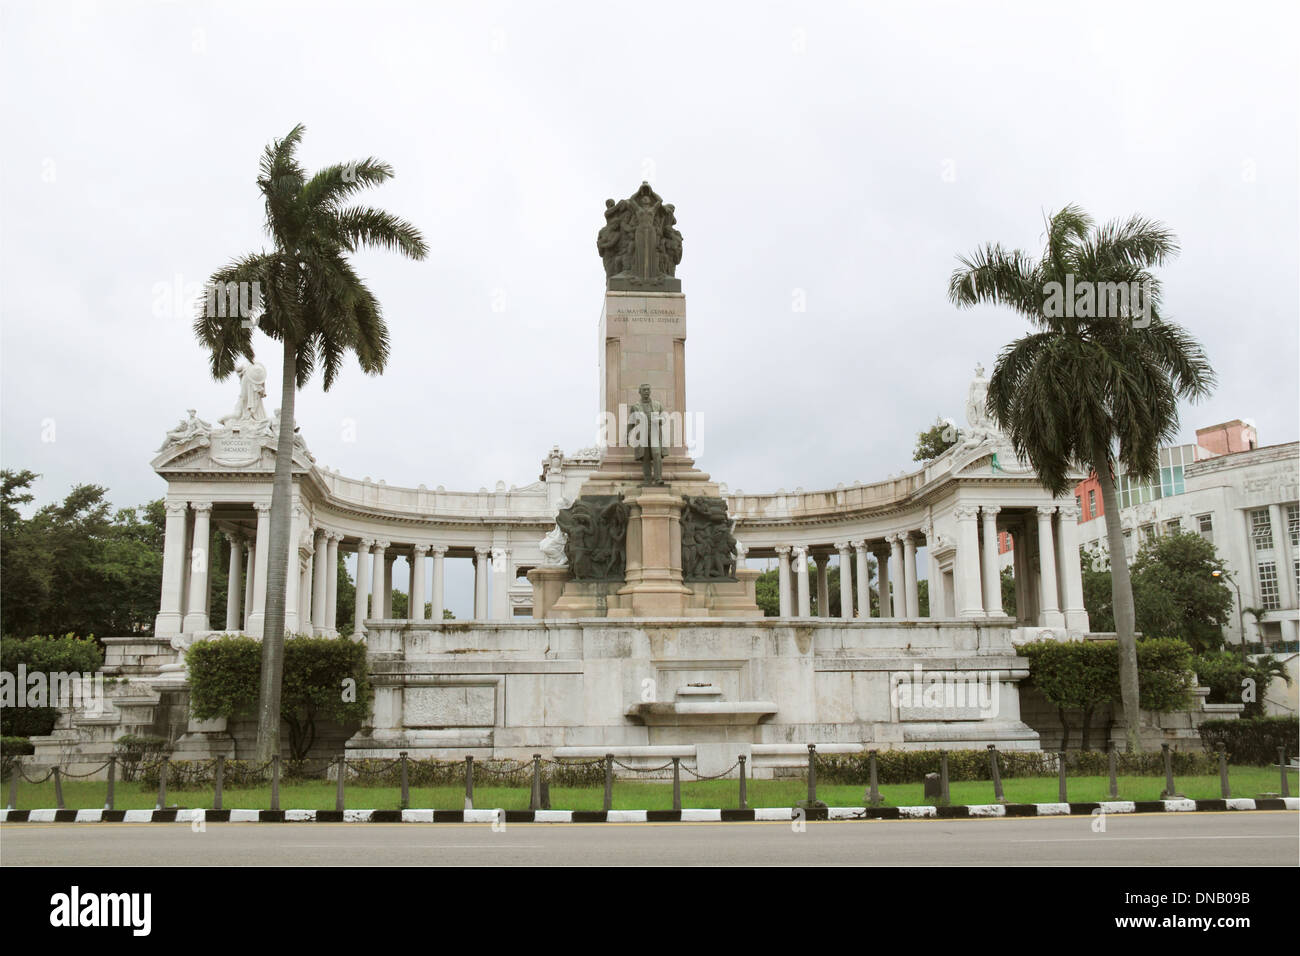 Monumento a José Miguel Gómez, Vedado, Havana, Cuba, Caribbean Sea, Central America Stock Photo